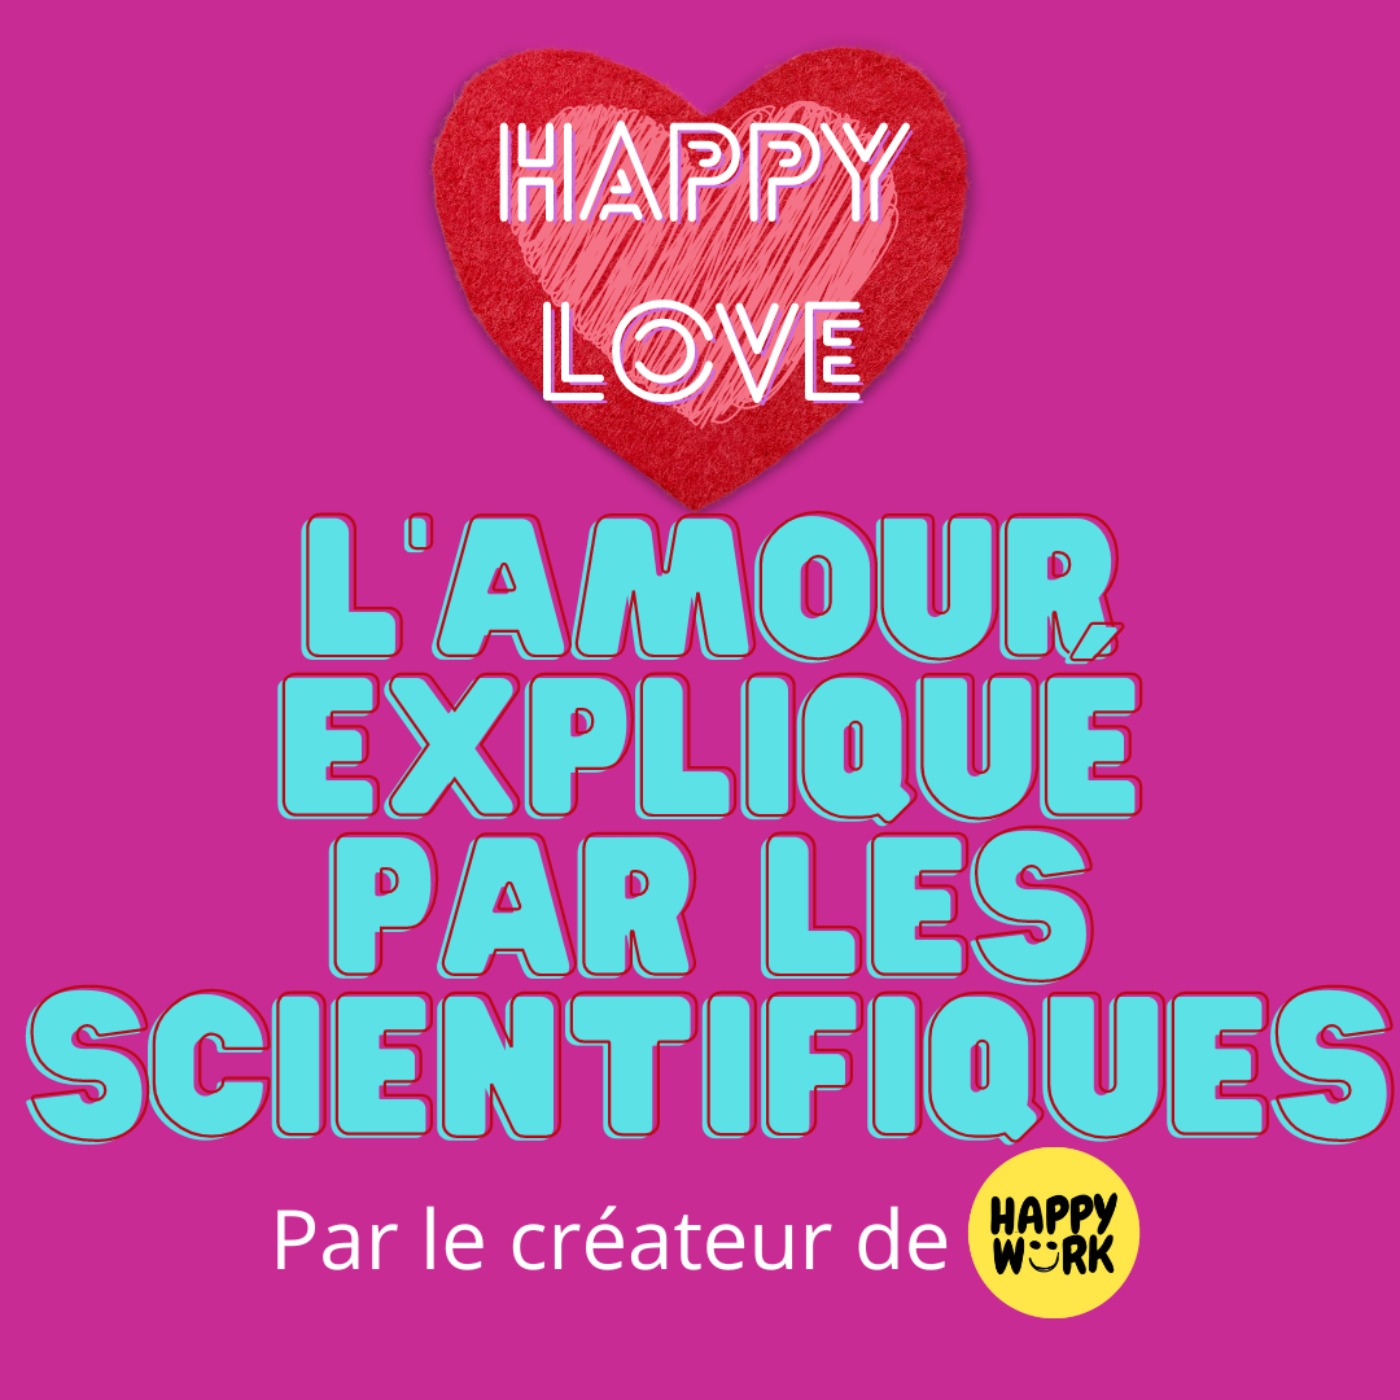 L'amour expliqué par les scientifiques